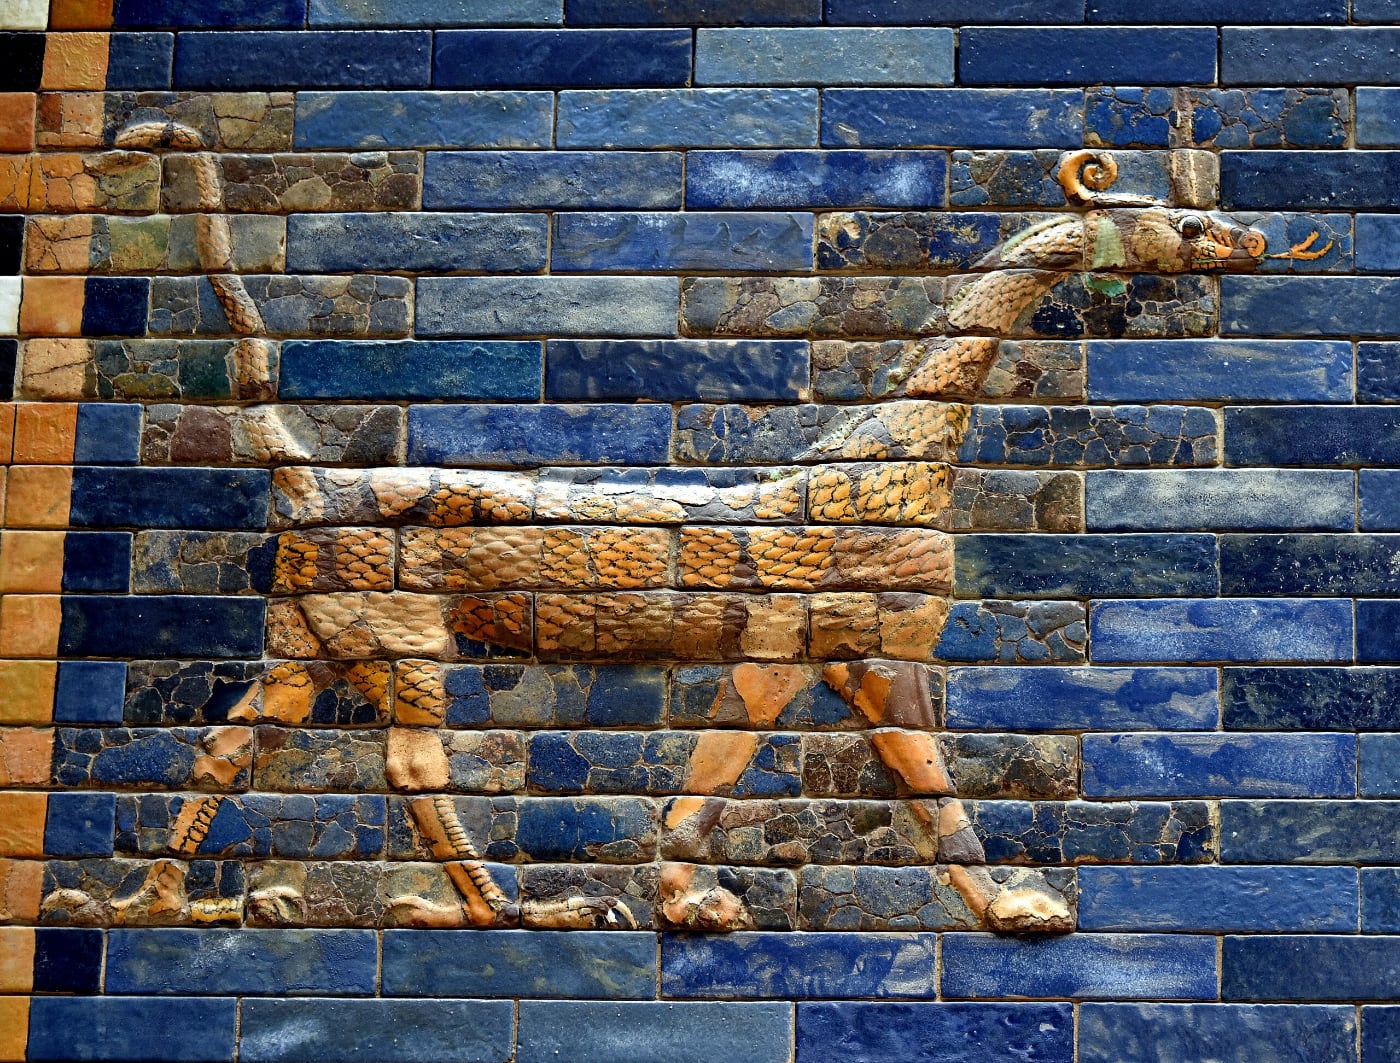 Imágenes de dragones –como la de la foto–, leones y toros decoraban la Puerta de Ishtar, en la Babilonia de mediados del primer milenio antes de nuestra era.